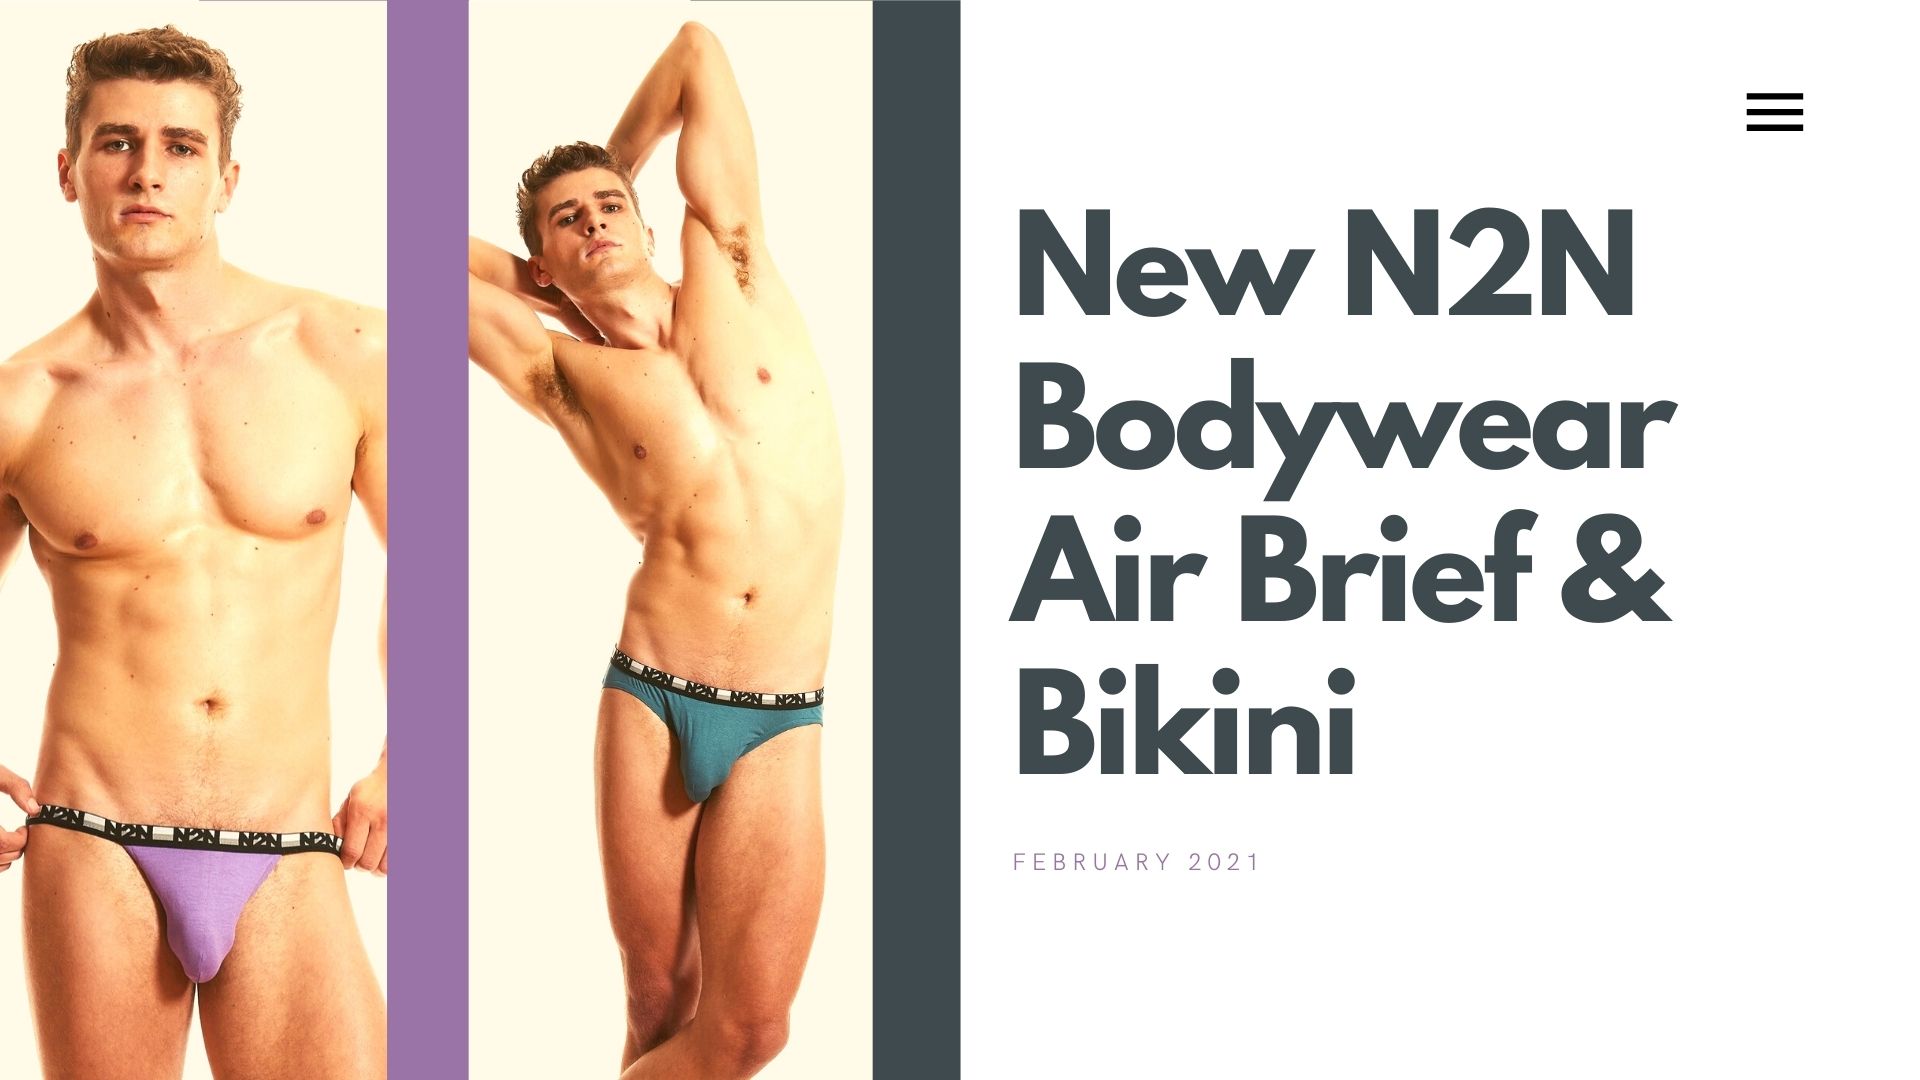 N2N Bodywear is ALL NEW! – Underwear News Briefs